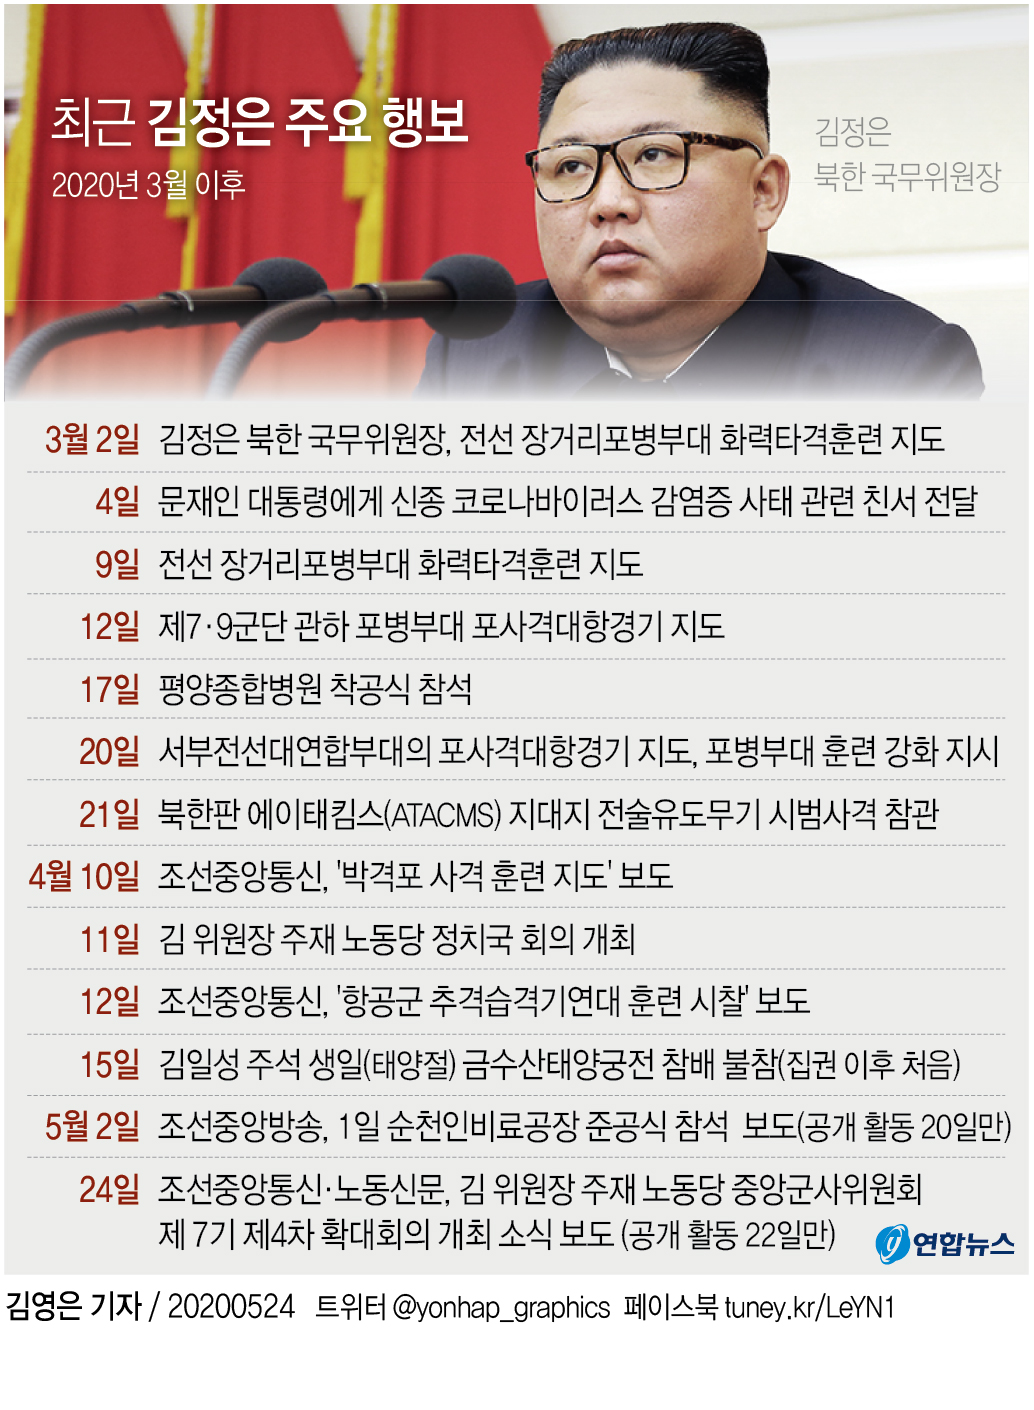 [그래픽] 최근 김정은 주요 행보